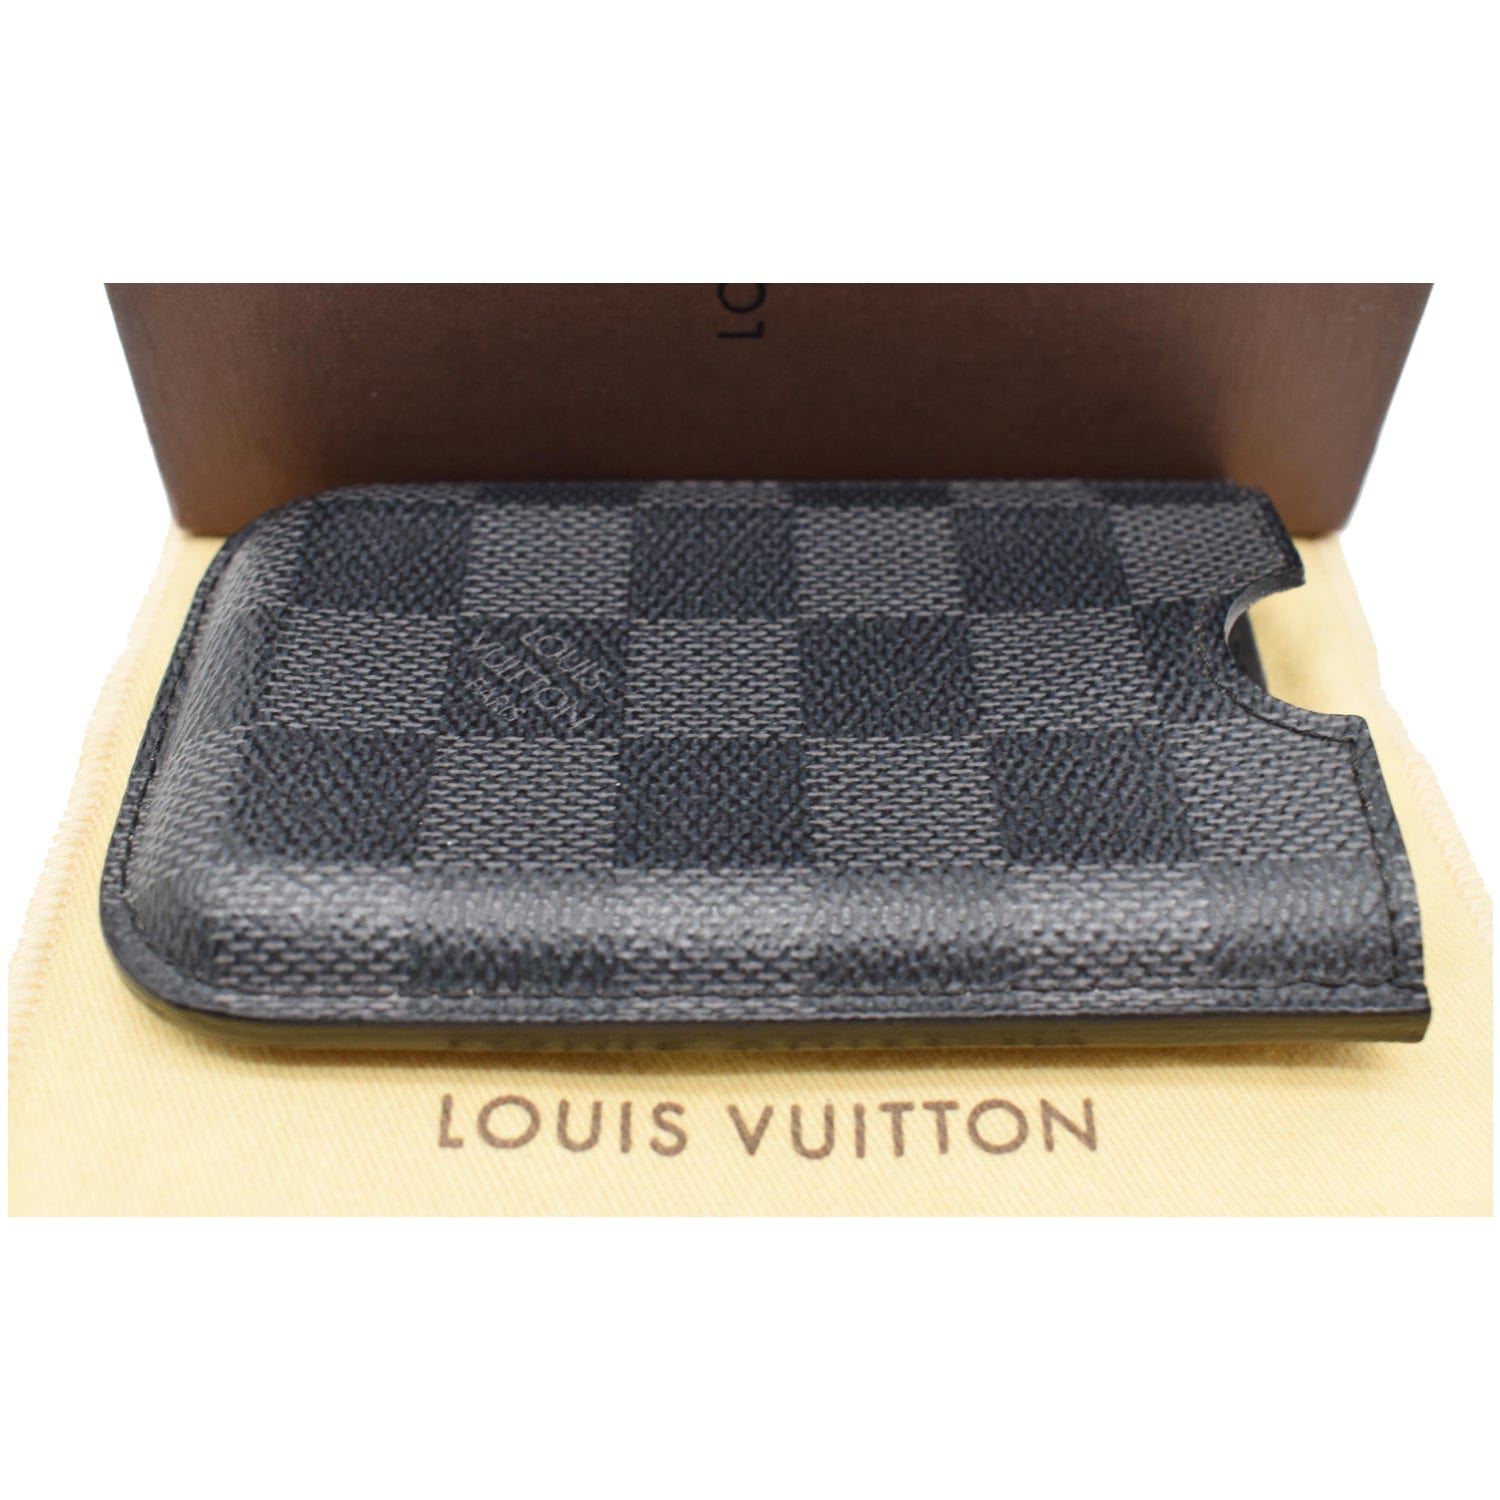 Louis Vuitton case for 3 watches in damier graphite canvas Dark